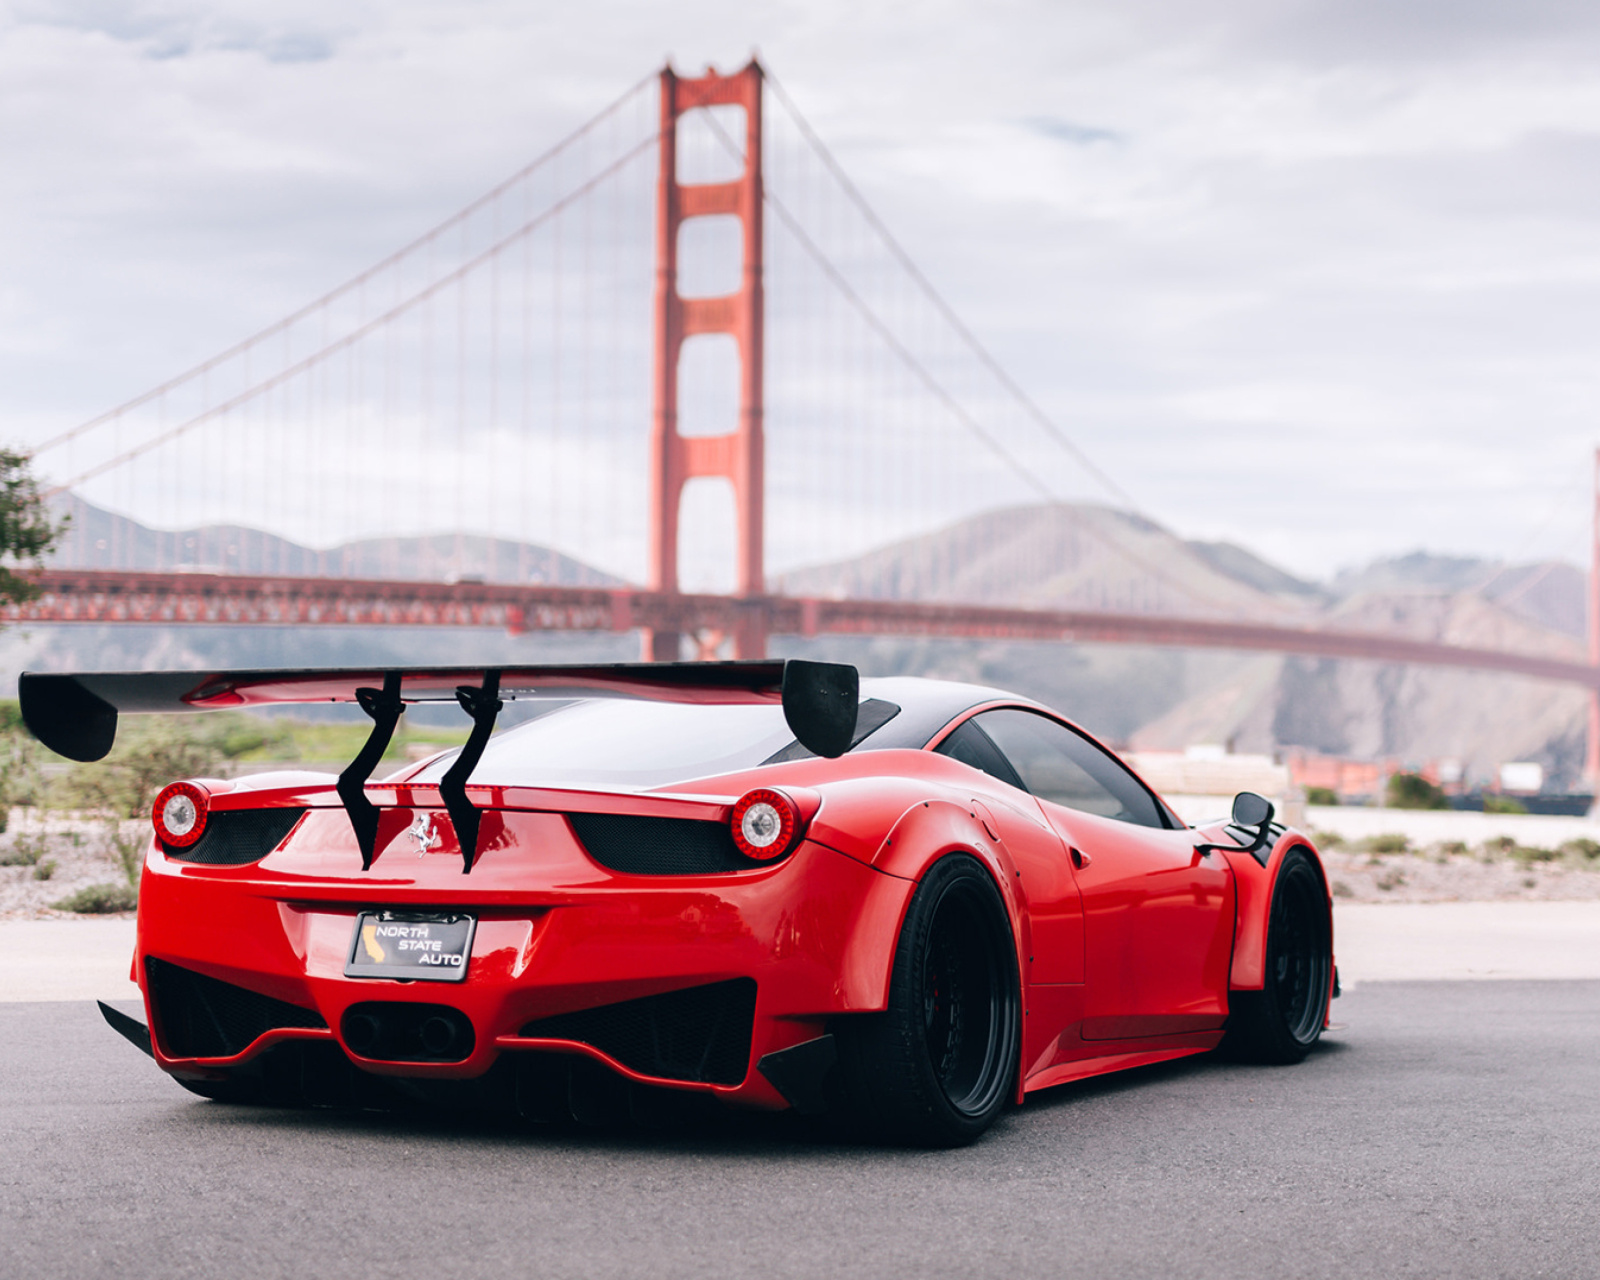 Ferrari 458 Italia near Golden Gate Bridge screenshot #1 1600x1280